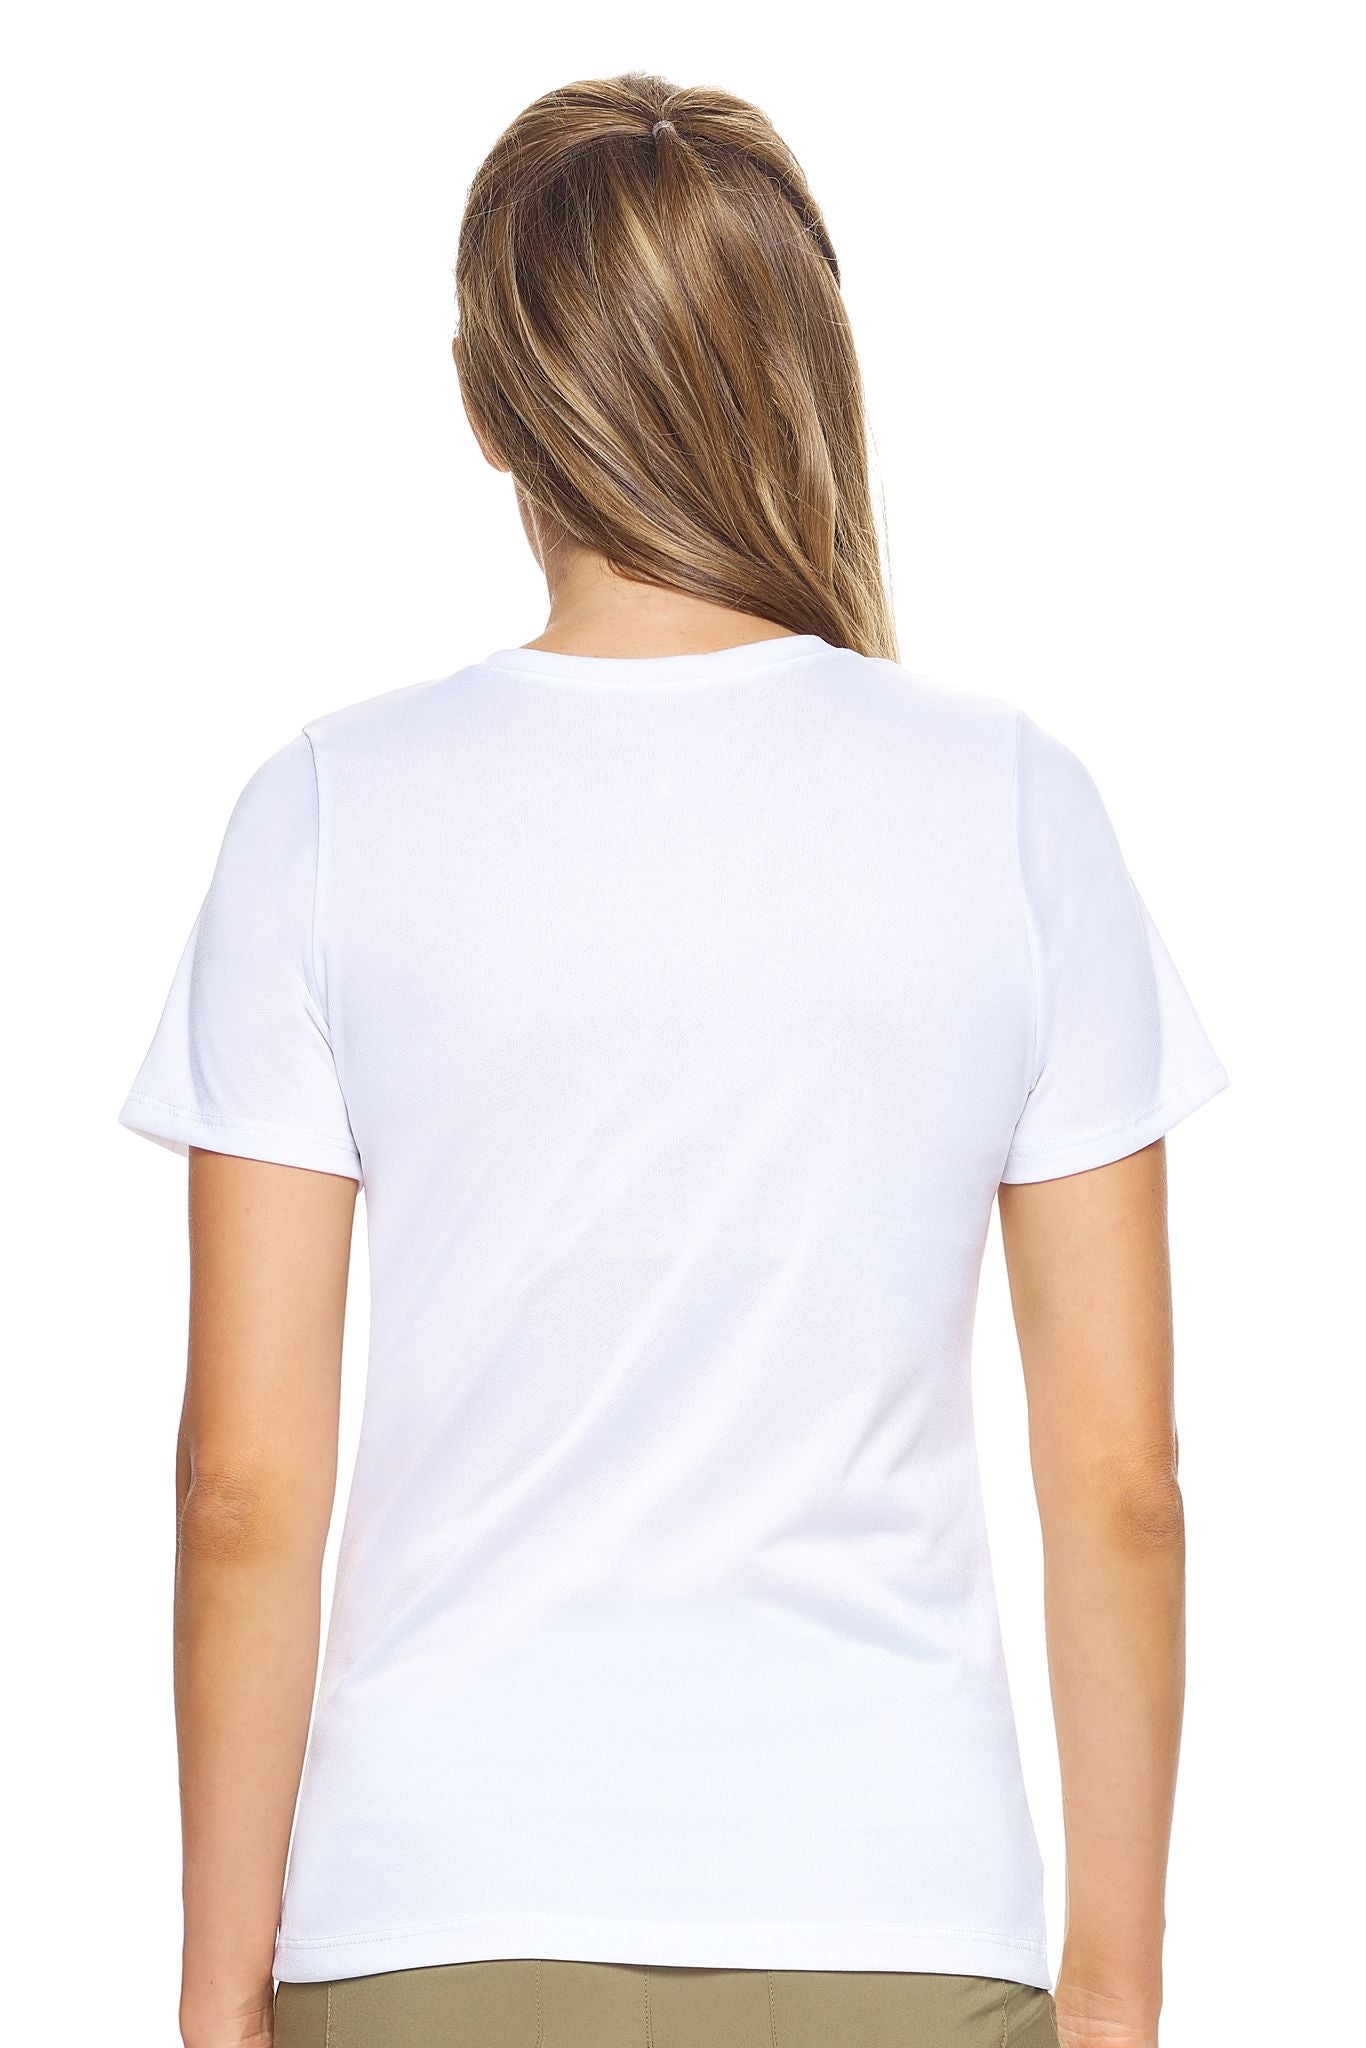 Expert Brand Wholesale Women's Short Sleeve Natural-Feel Jersey V-Neck in White Image 3#white